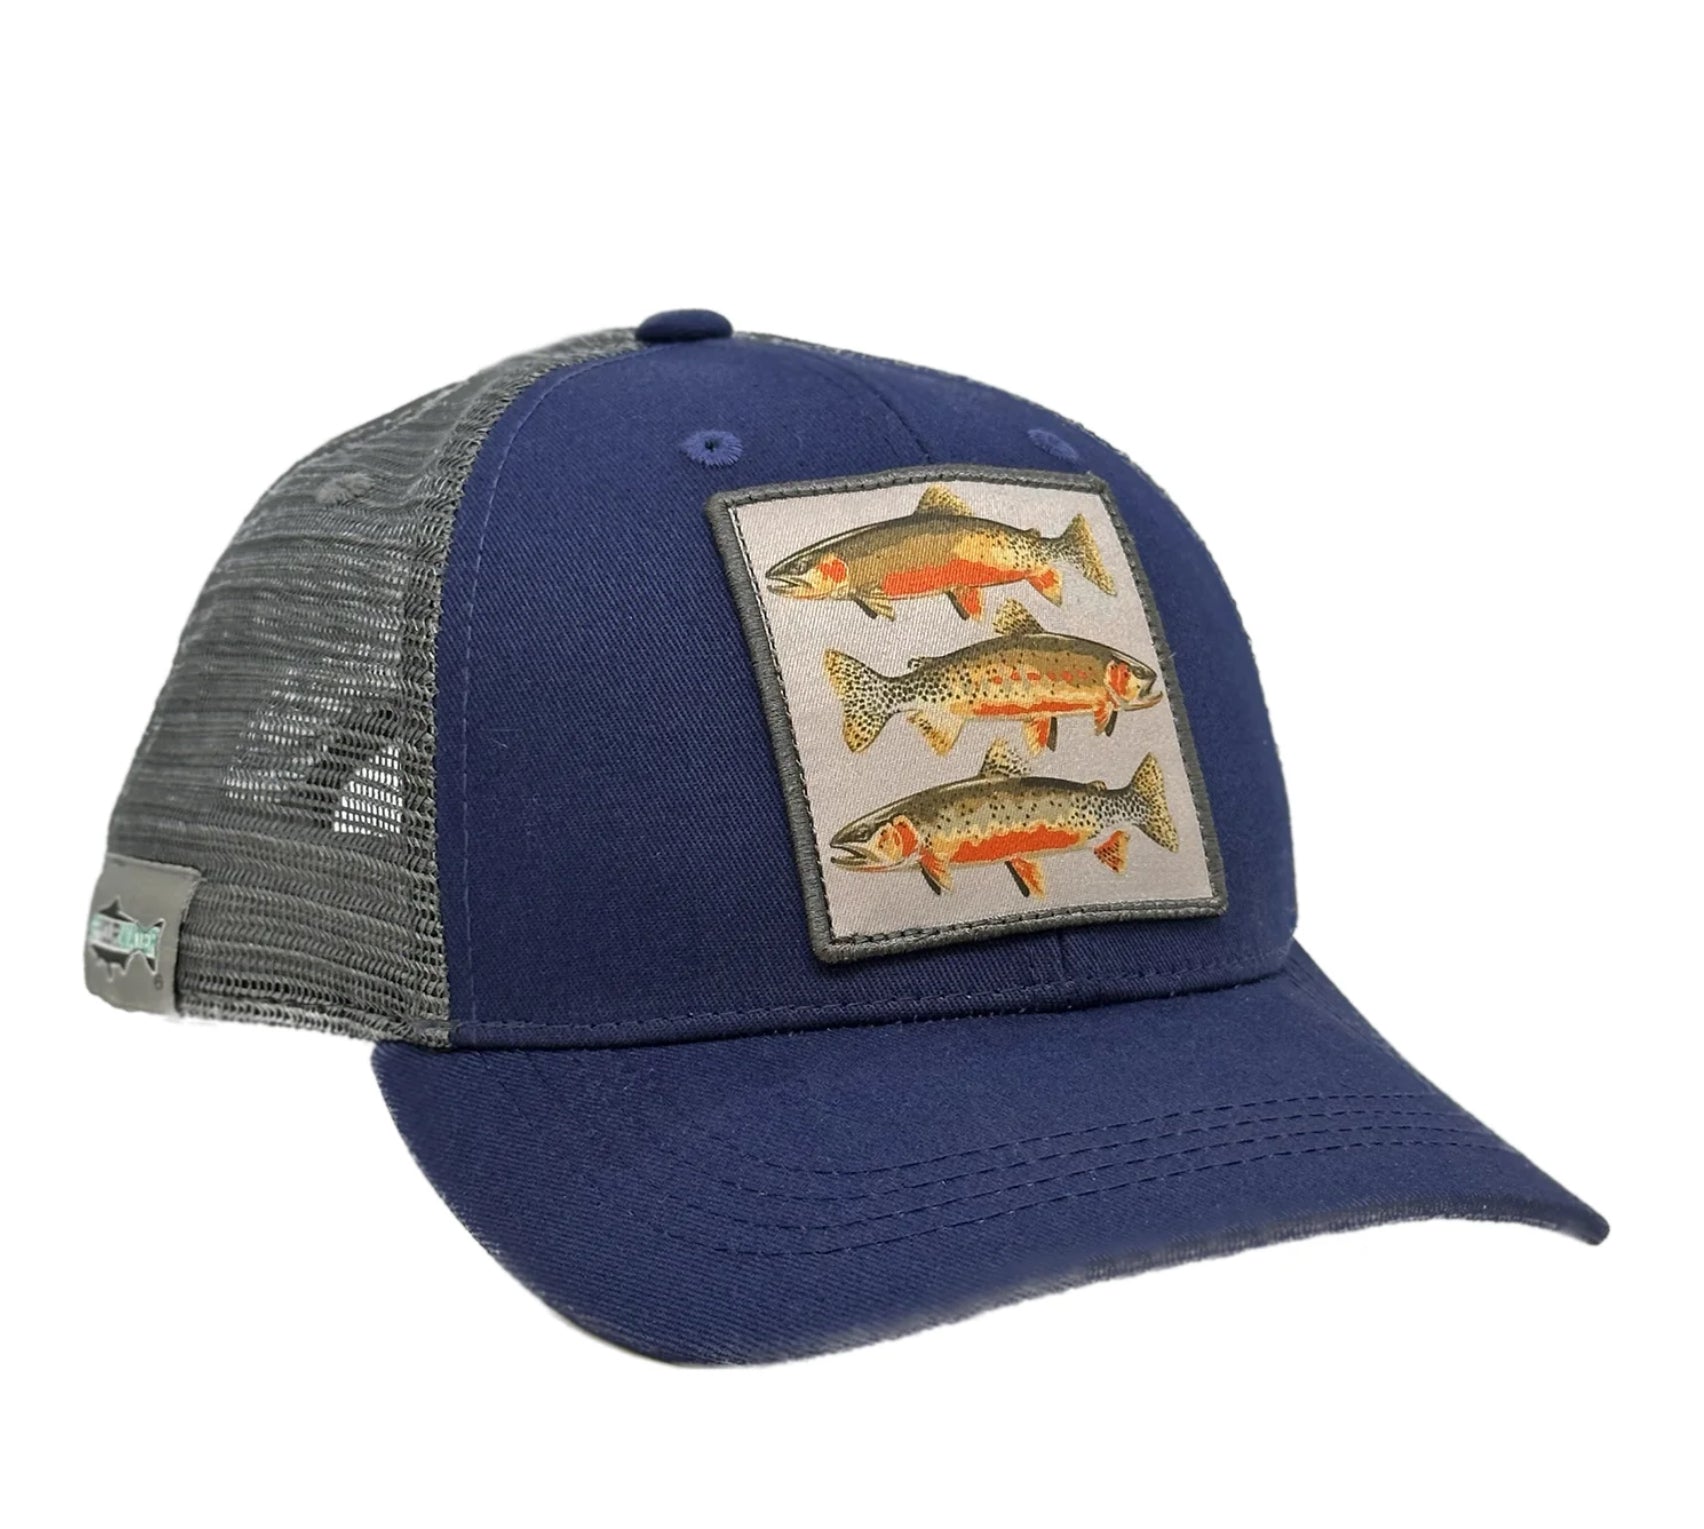  Fishing Hats - Top Brands / Fishing Hats / Fishing